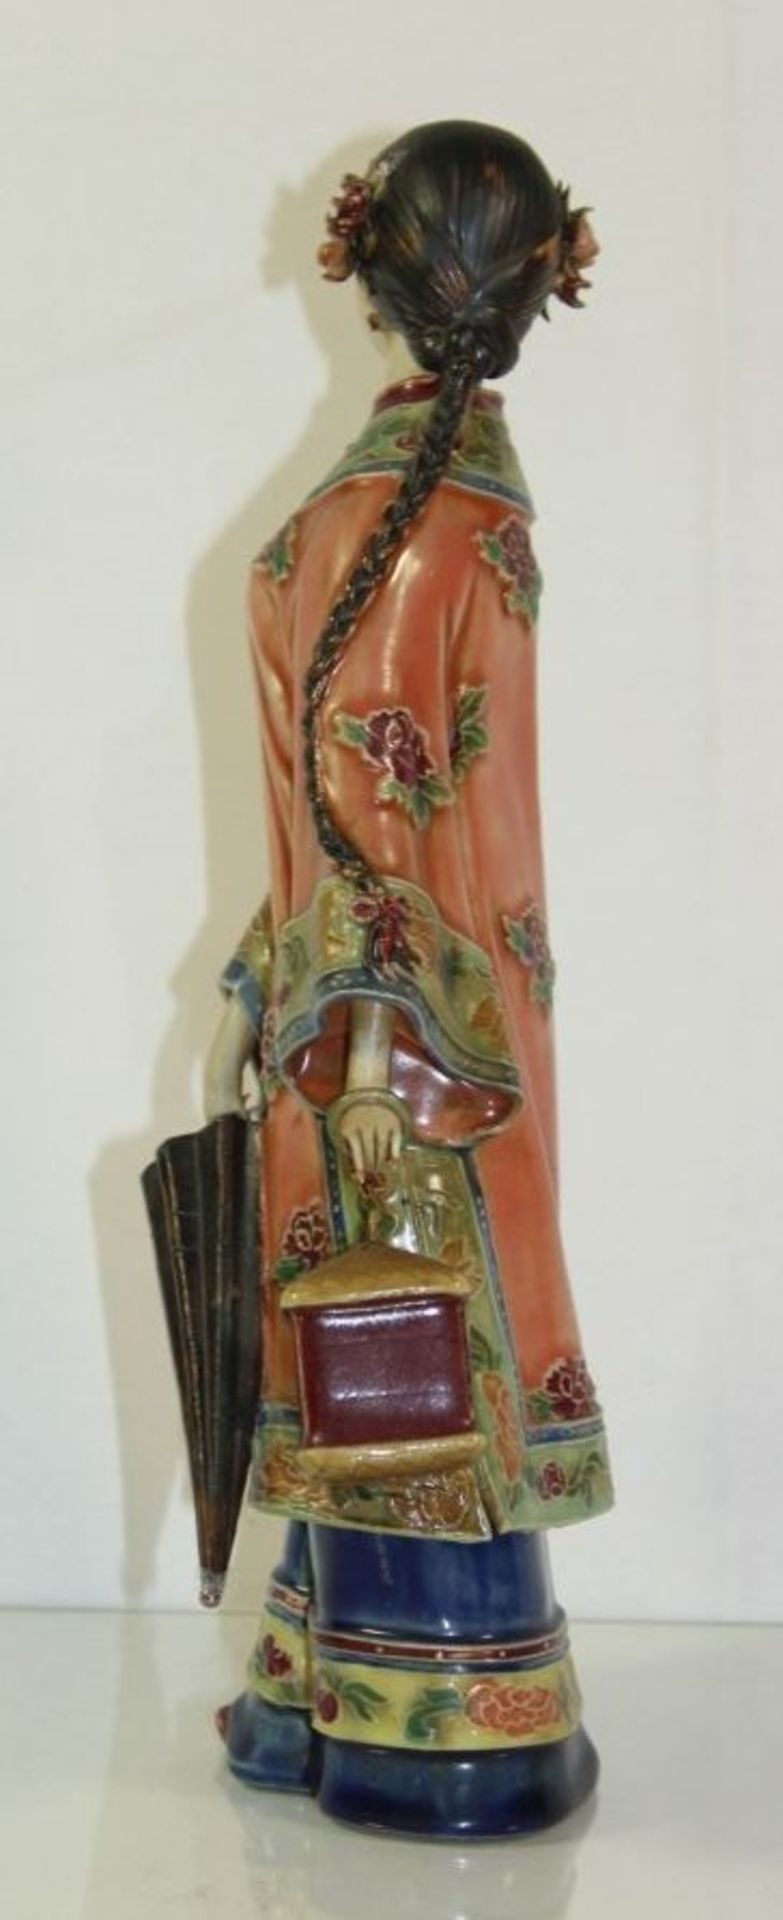 Figur, chinesische Dame mit Schirm und Korb, gemarkt, an den Ohren min. bestossen, H-30cm.- - -22.61 - Bild 3 aus 6